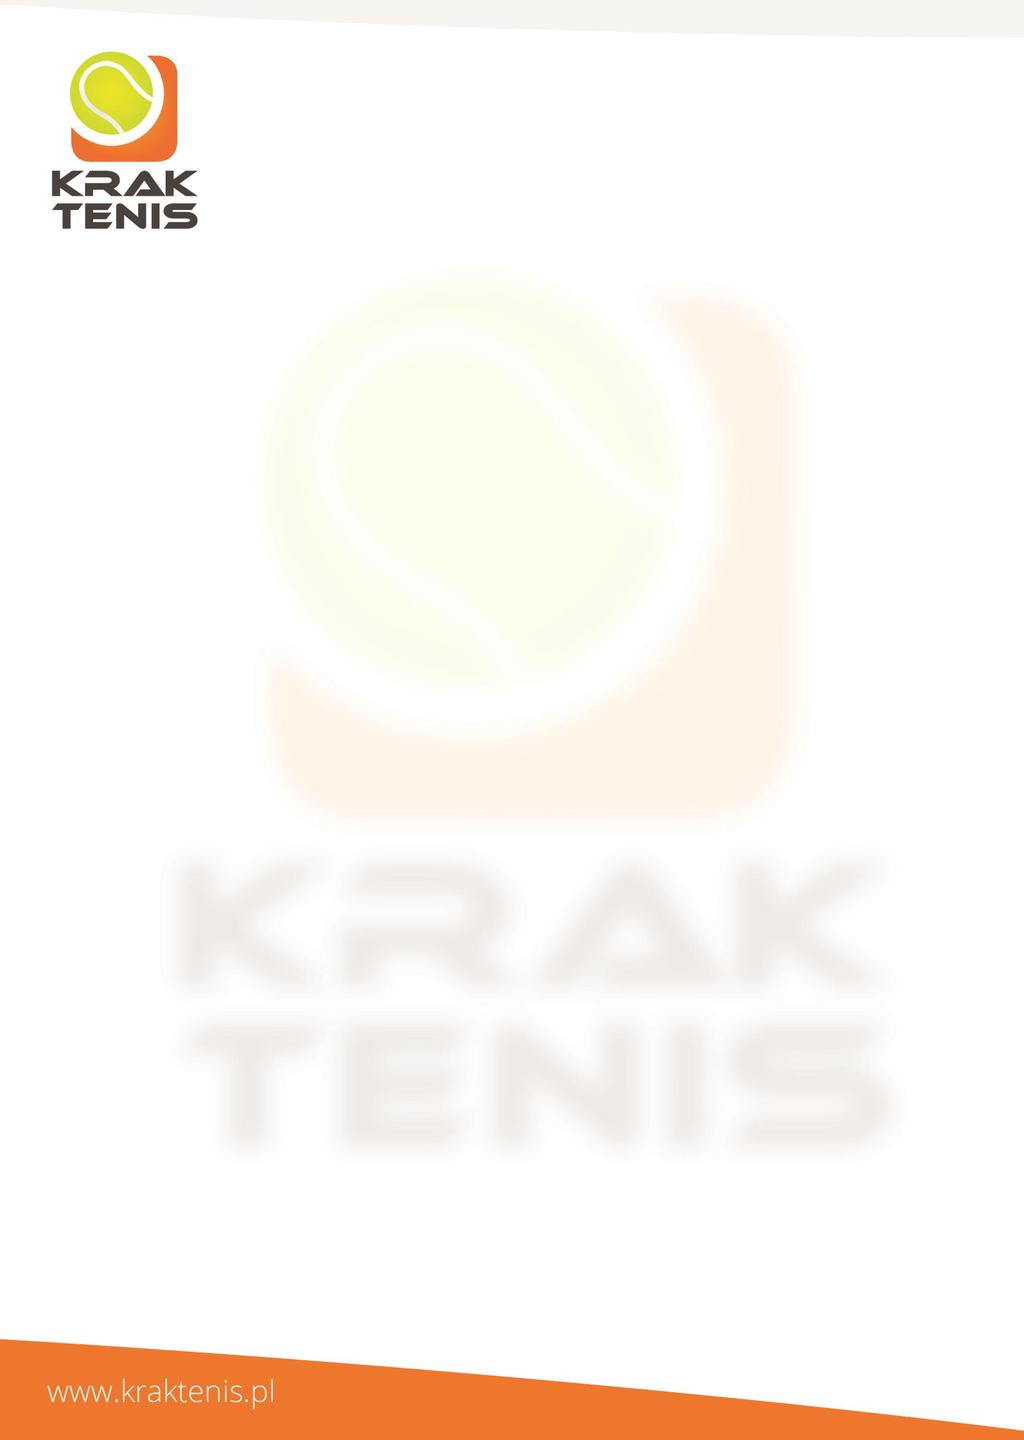 REGULAMIN ROZGRYWEK Amatorskiej Ligii Krak Tenis oraz Amatorskiej Ligii Krak Tenis Kobiet 1.